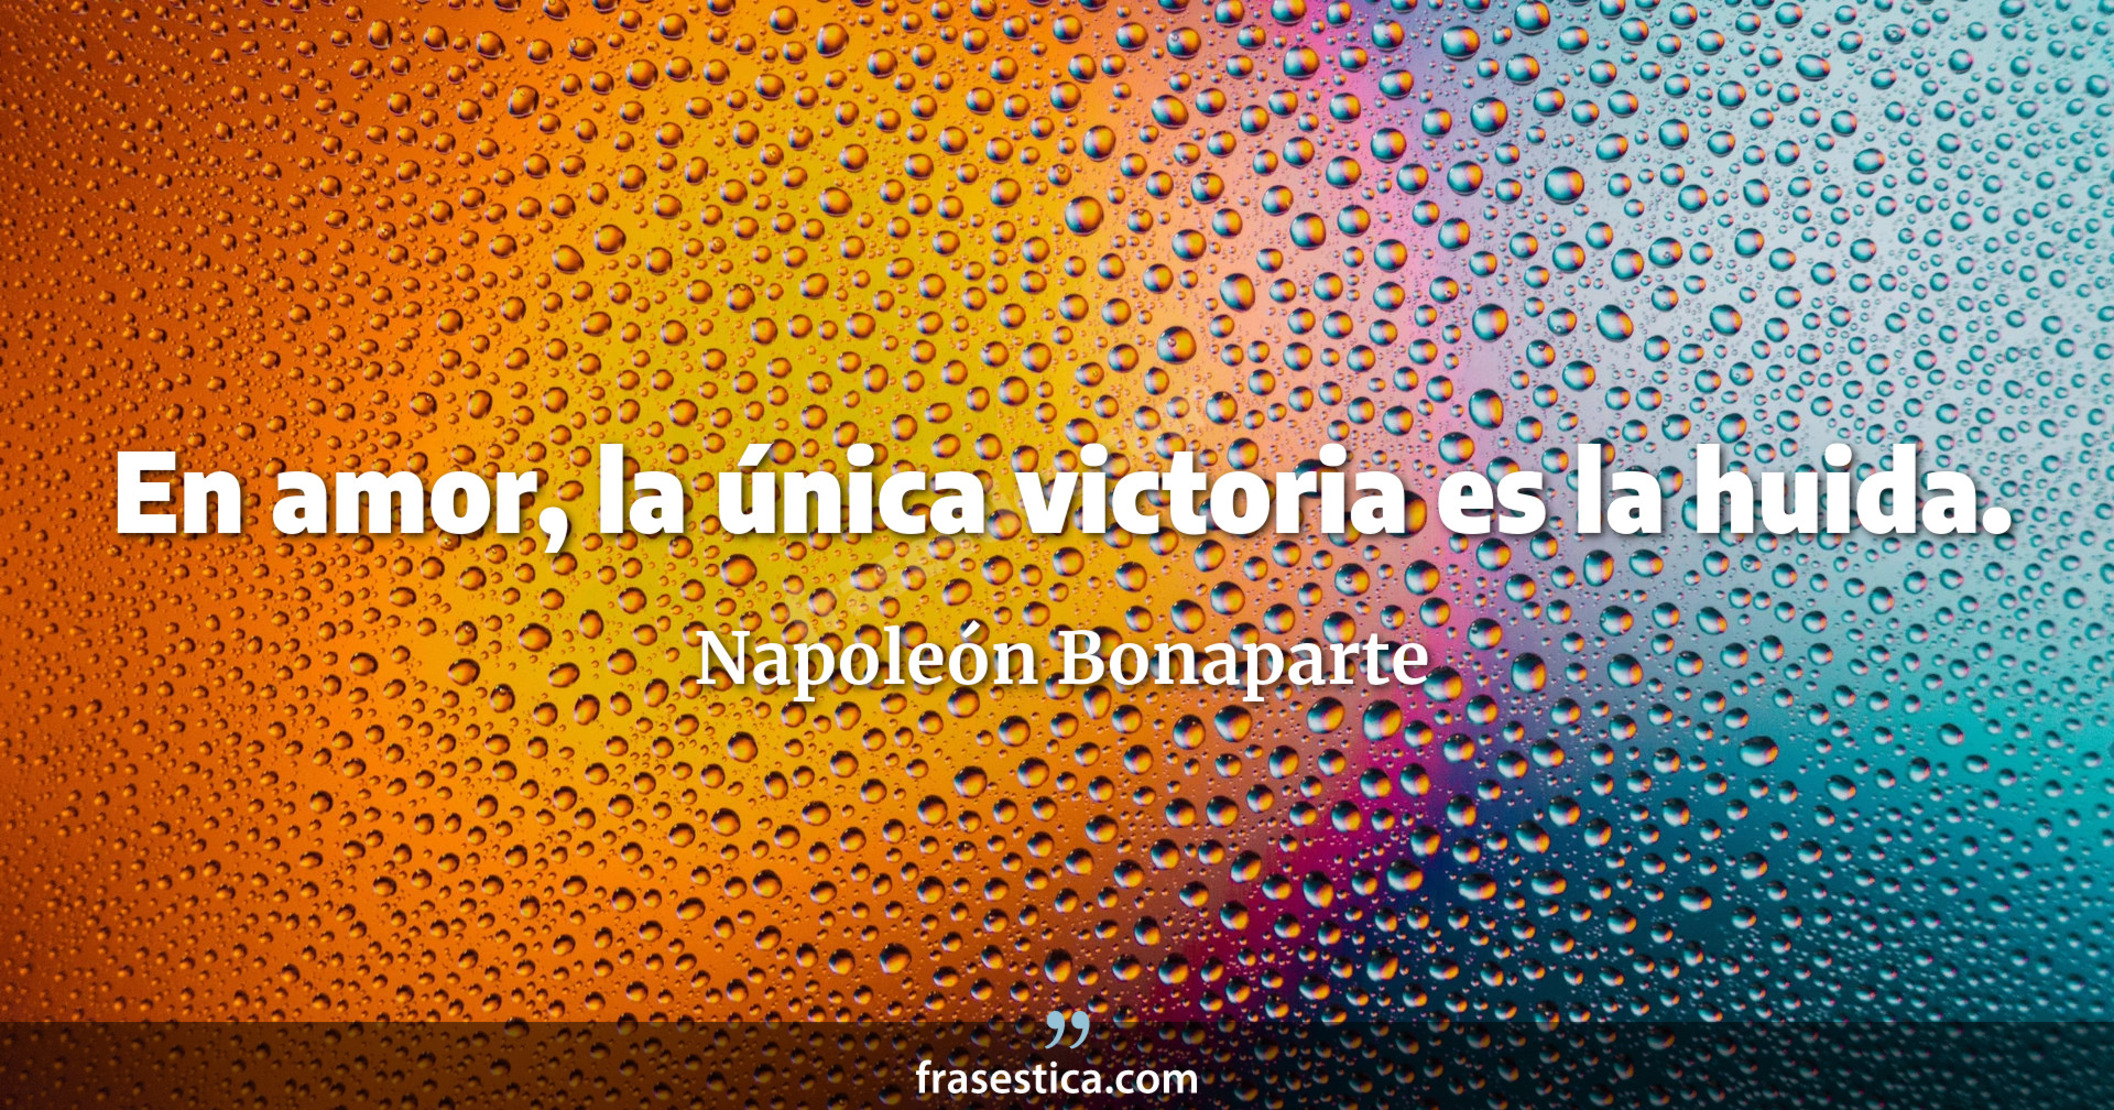 En amor, la única victoria es la huida. - Napoleón Bonaparte